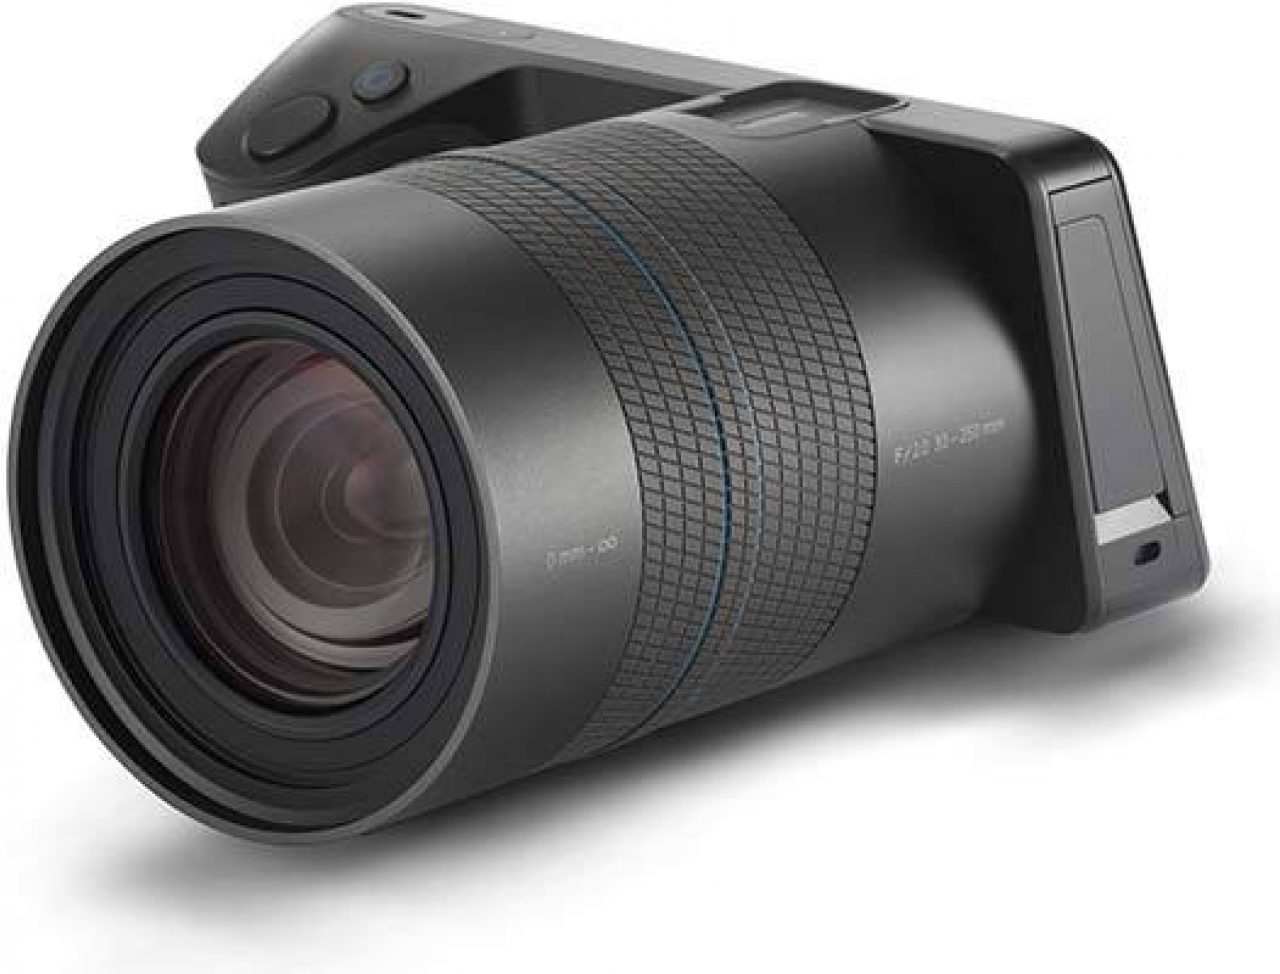 for Nikon Coolpix L810 Orange Travel Shoulder Bag Carrying Case P510 S9100 Digital SLR DSLR Camera 